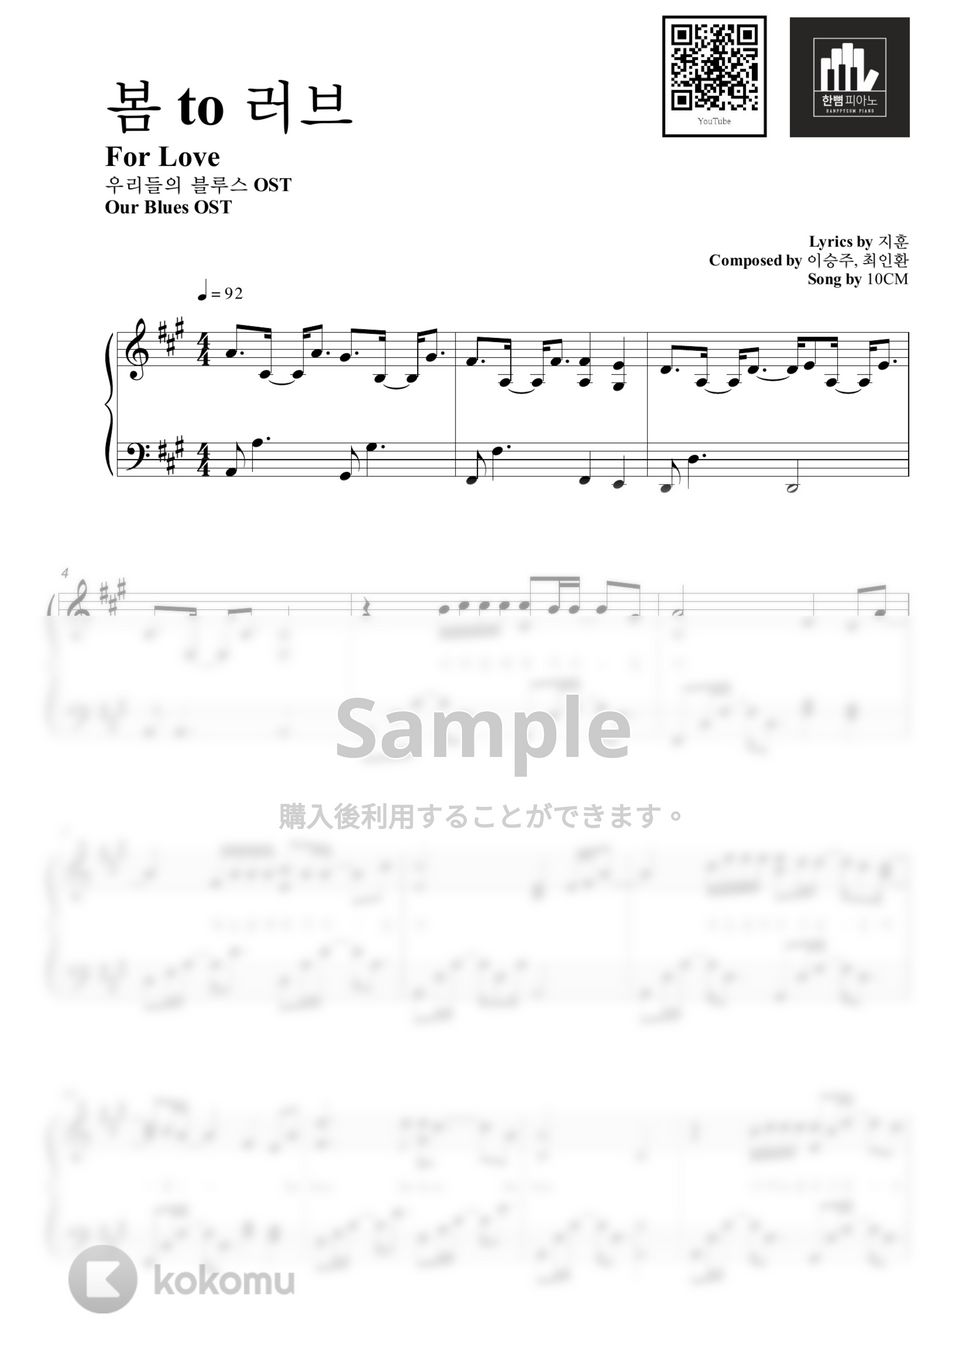 10CM - 봄 to 러브(For Love) (PIANO COVER) by HANPPYEOMPIANO